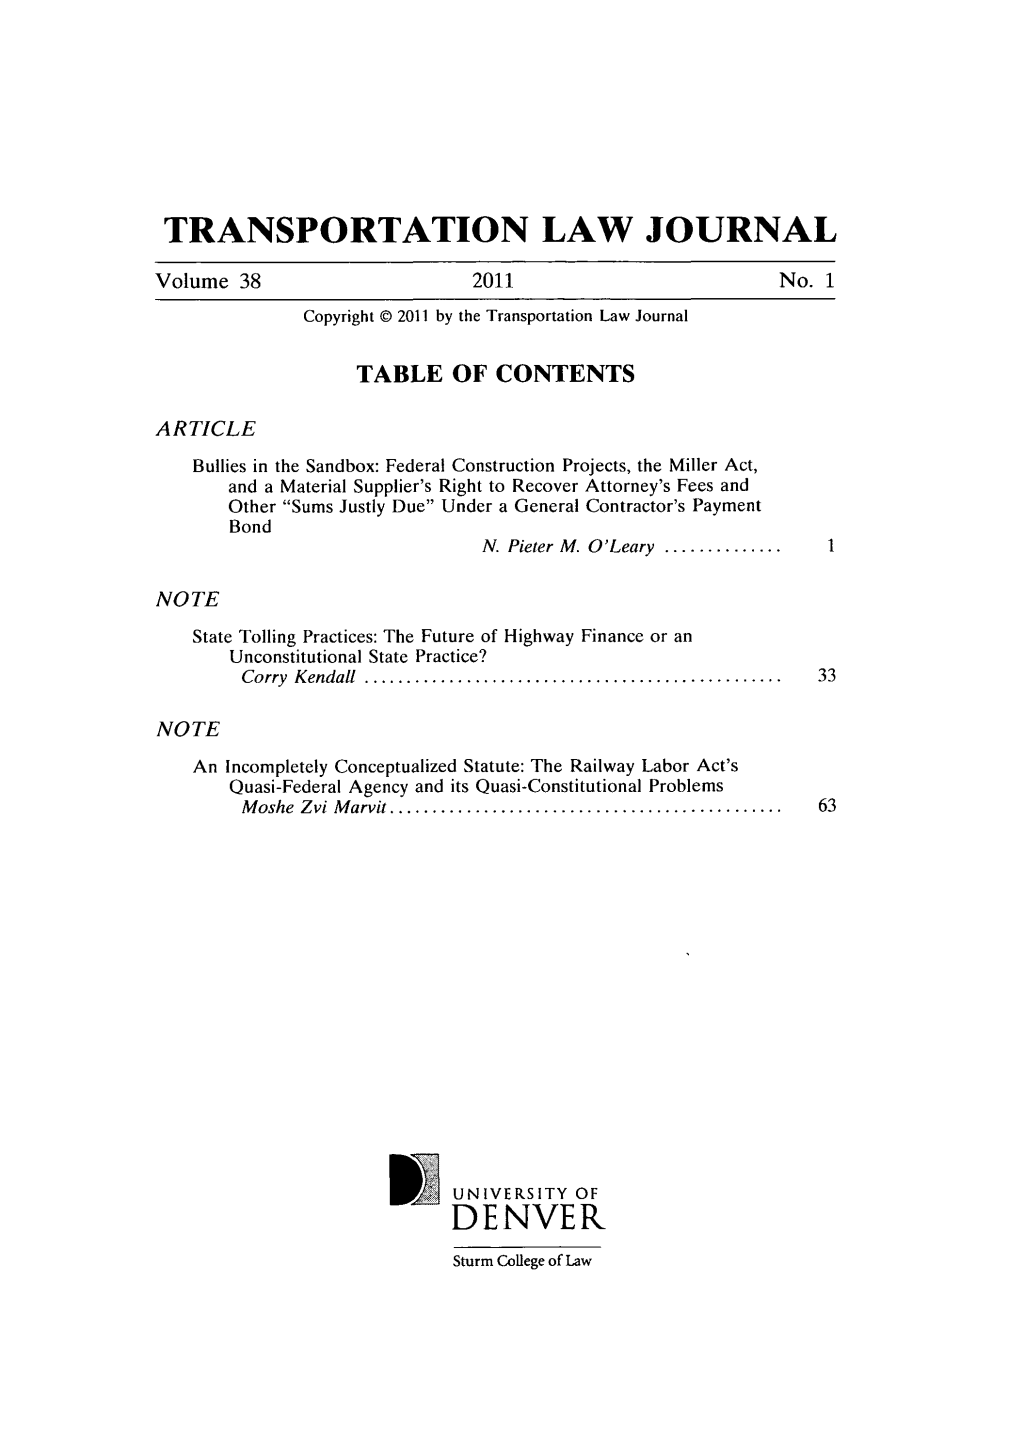 Transportation Law Journal Denver